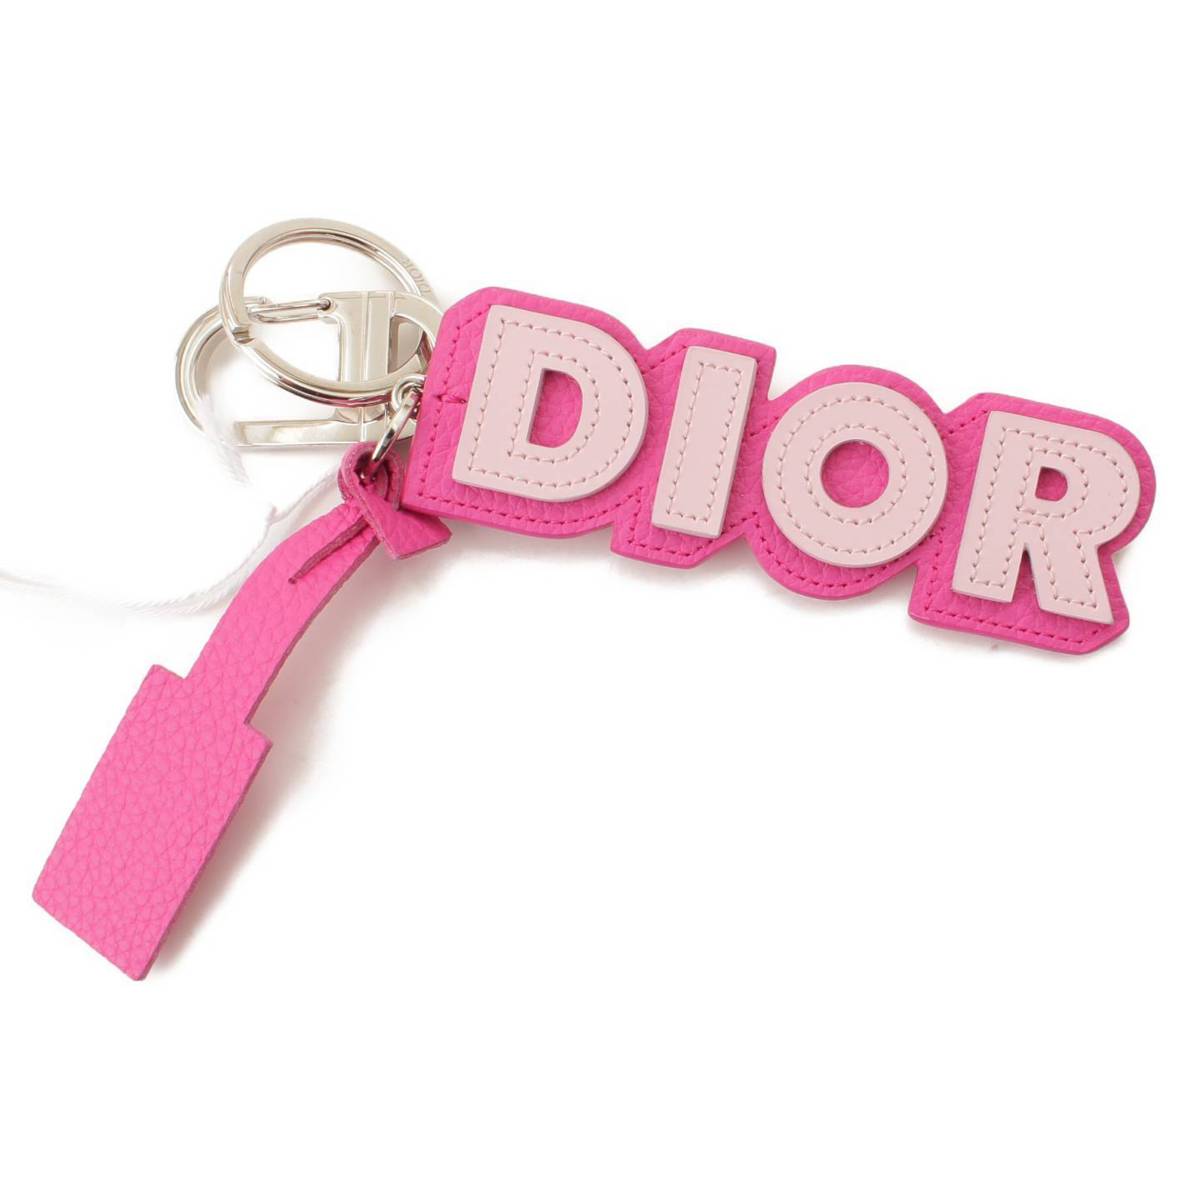 クリスチャン ディオール(Christian Dior) ロゴ レザー バッグチャーム キーホルダー キーリング ピンク